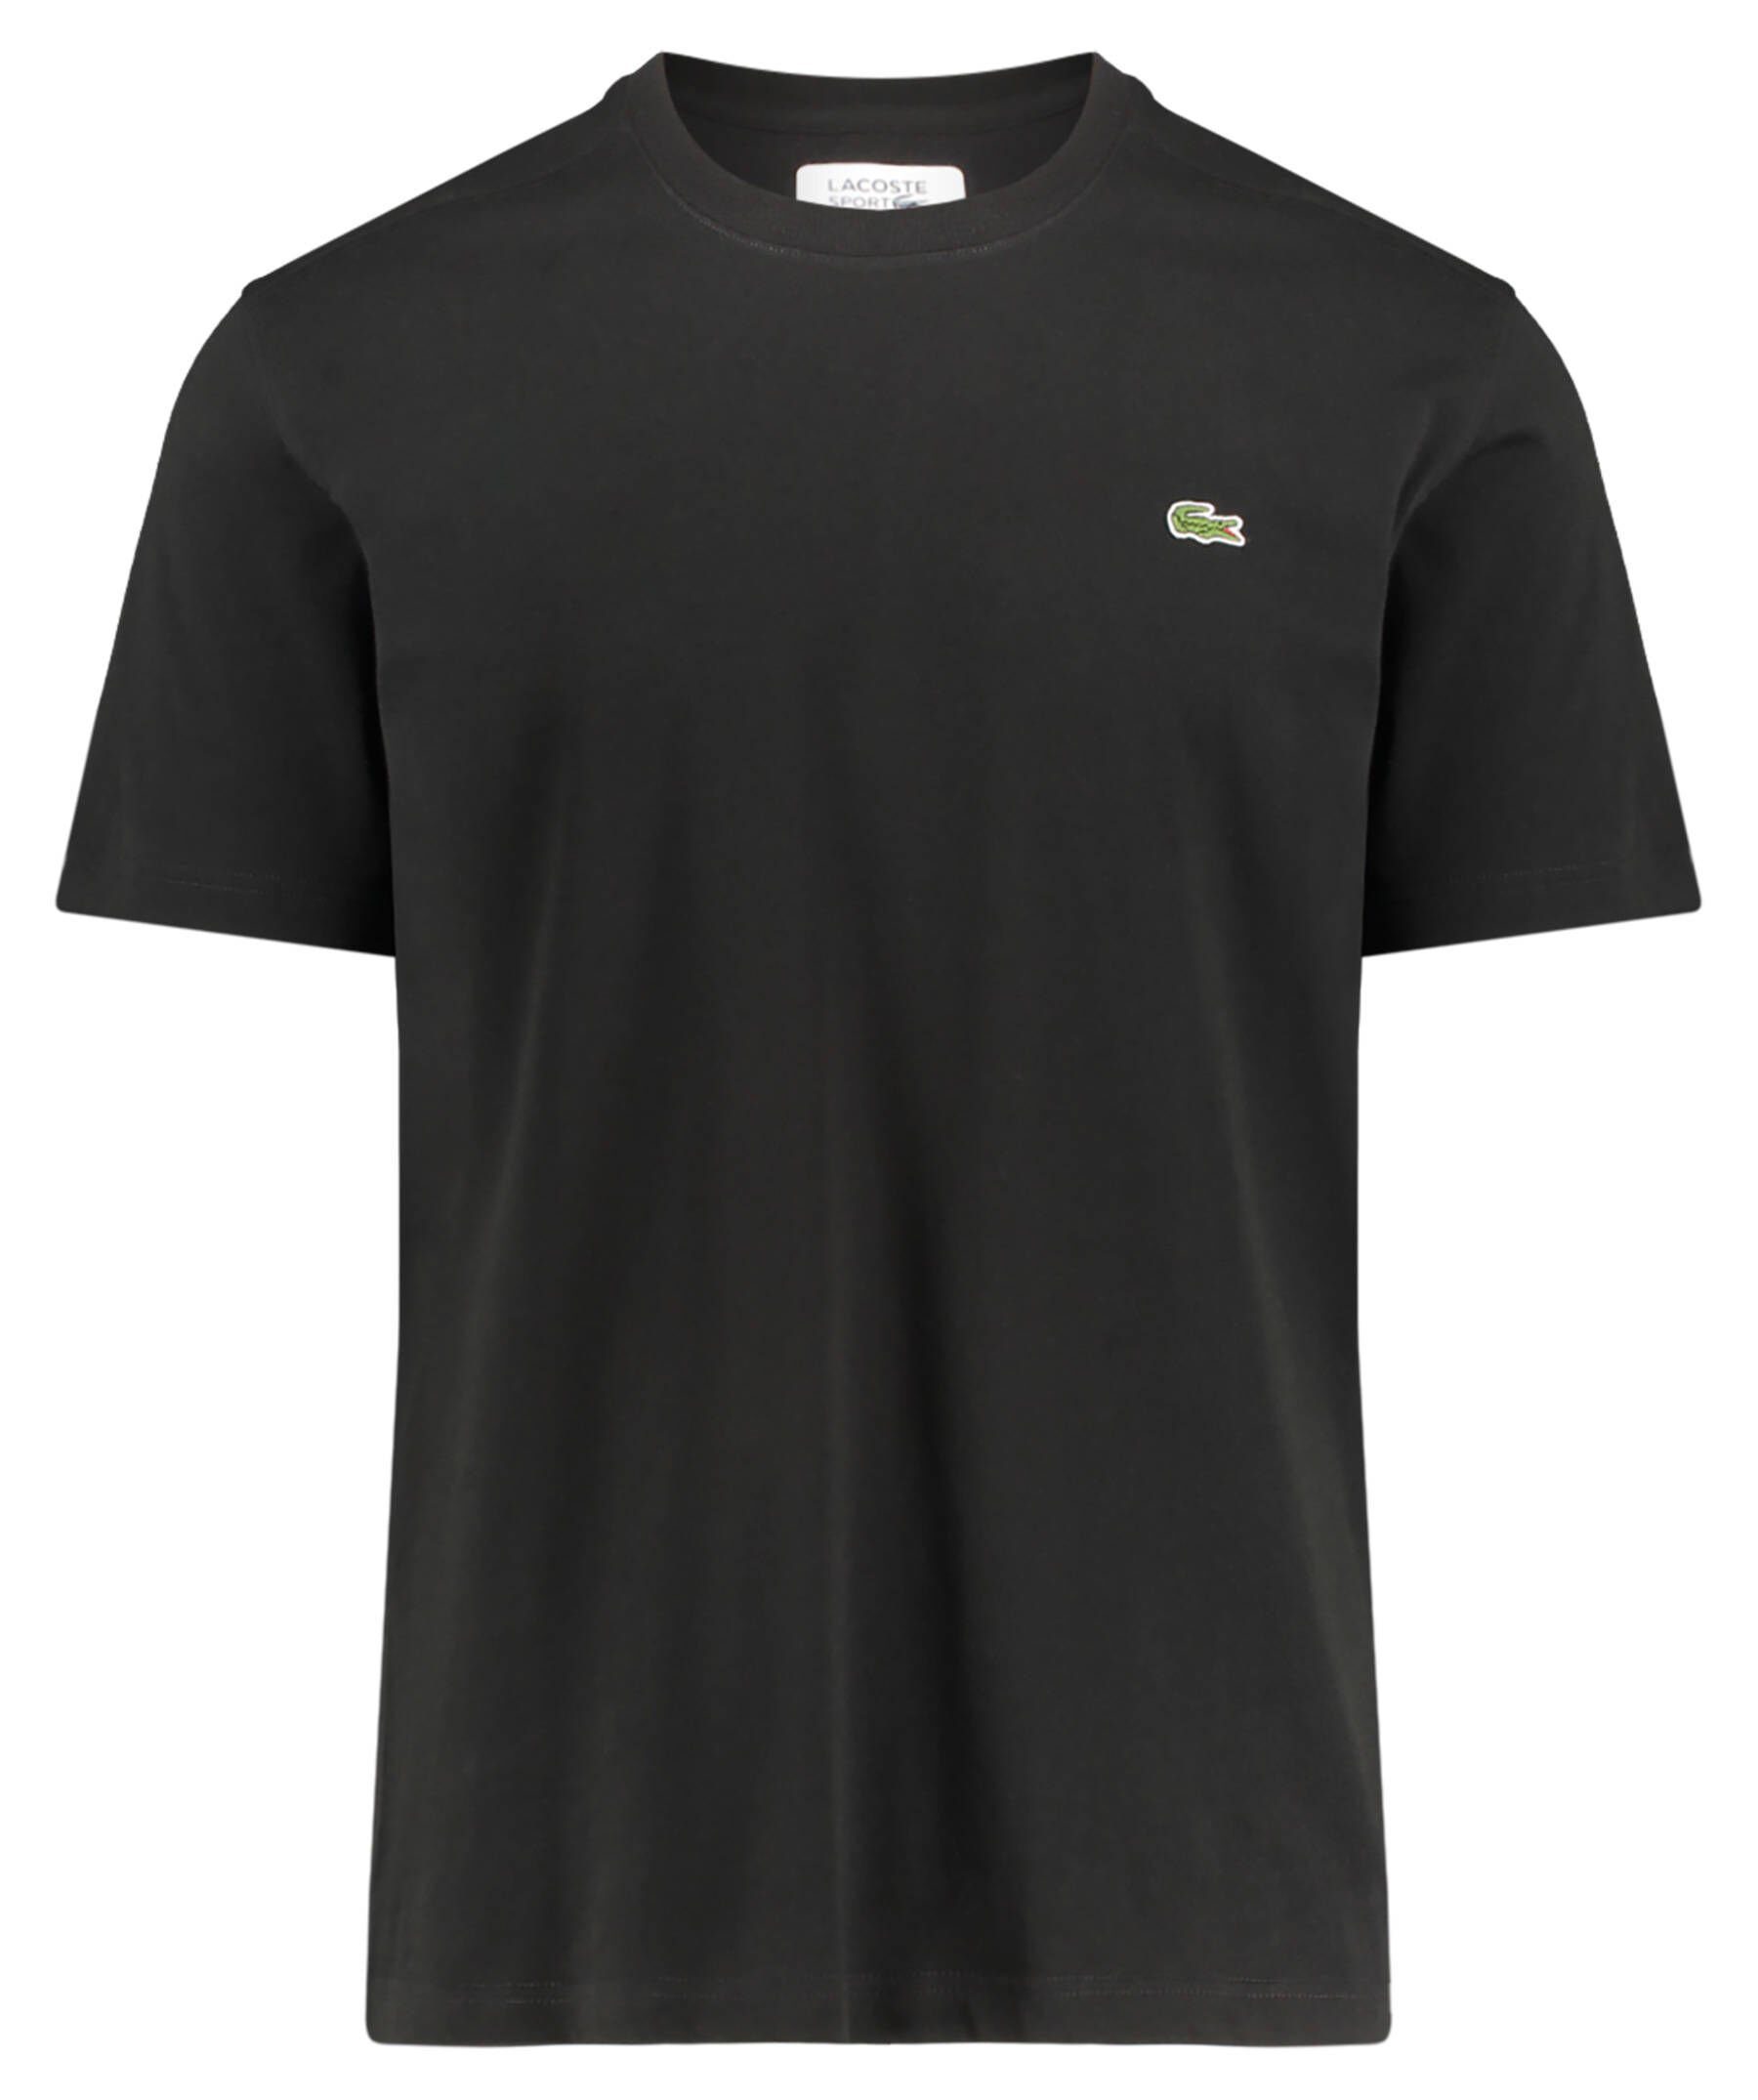 Lacoste Sport Tennisshirt Herren Tennisshirt TEE-SHIRT, Leichtes,  schweißabweisendes Design